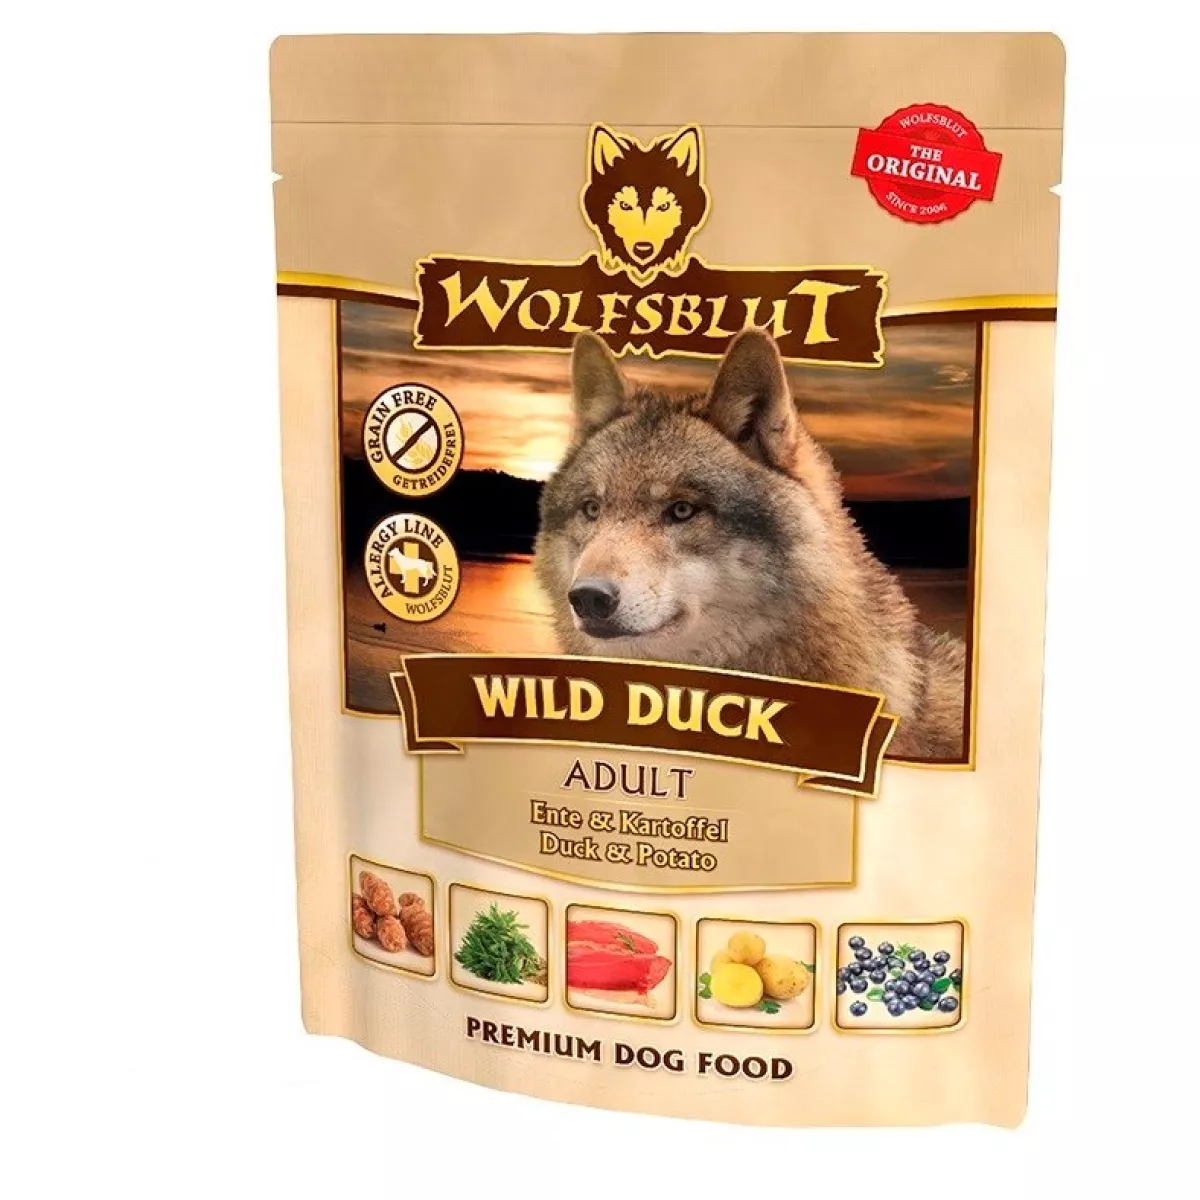 #3 - WolfsBlut Wild Duck, Vådfoder, 300g